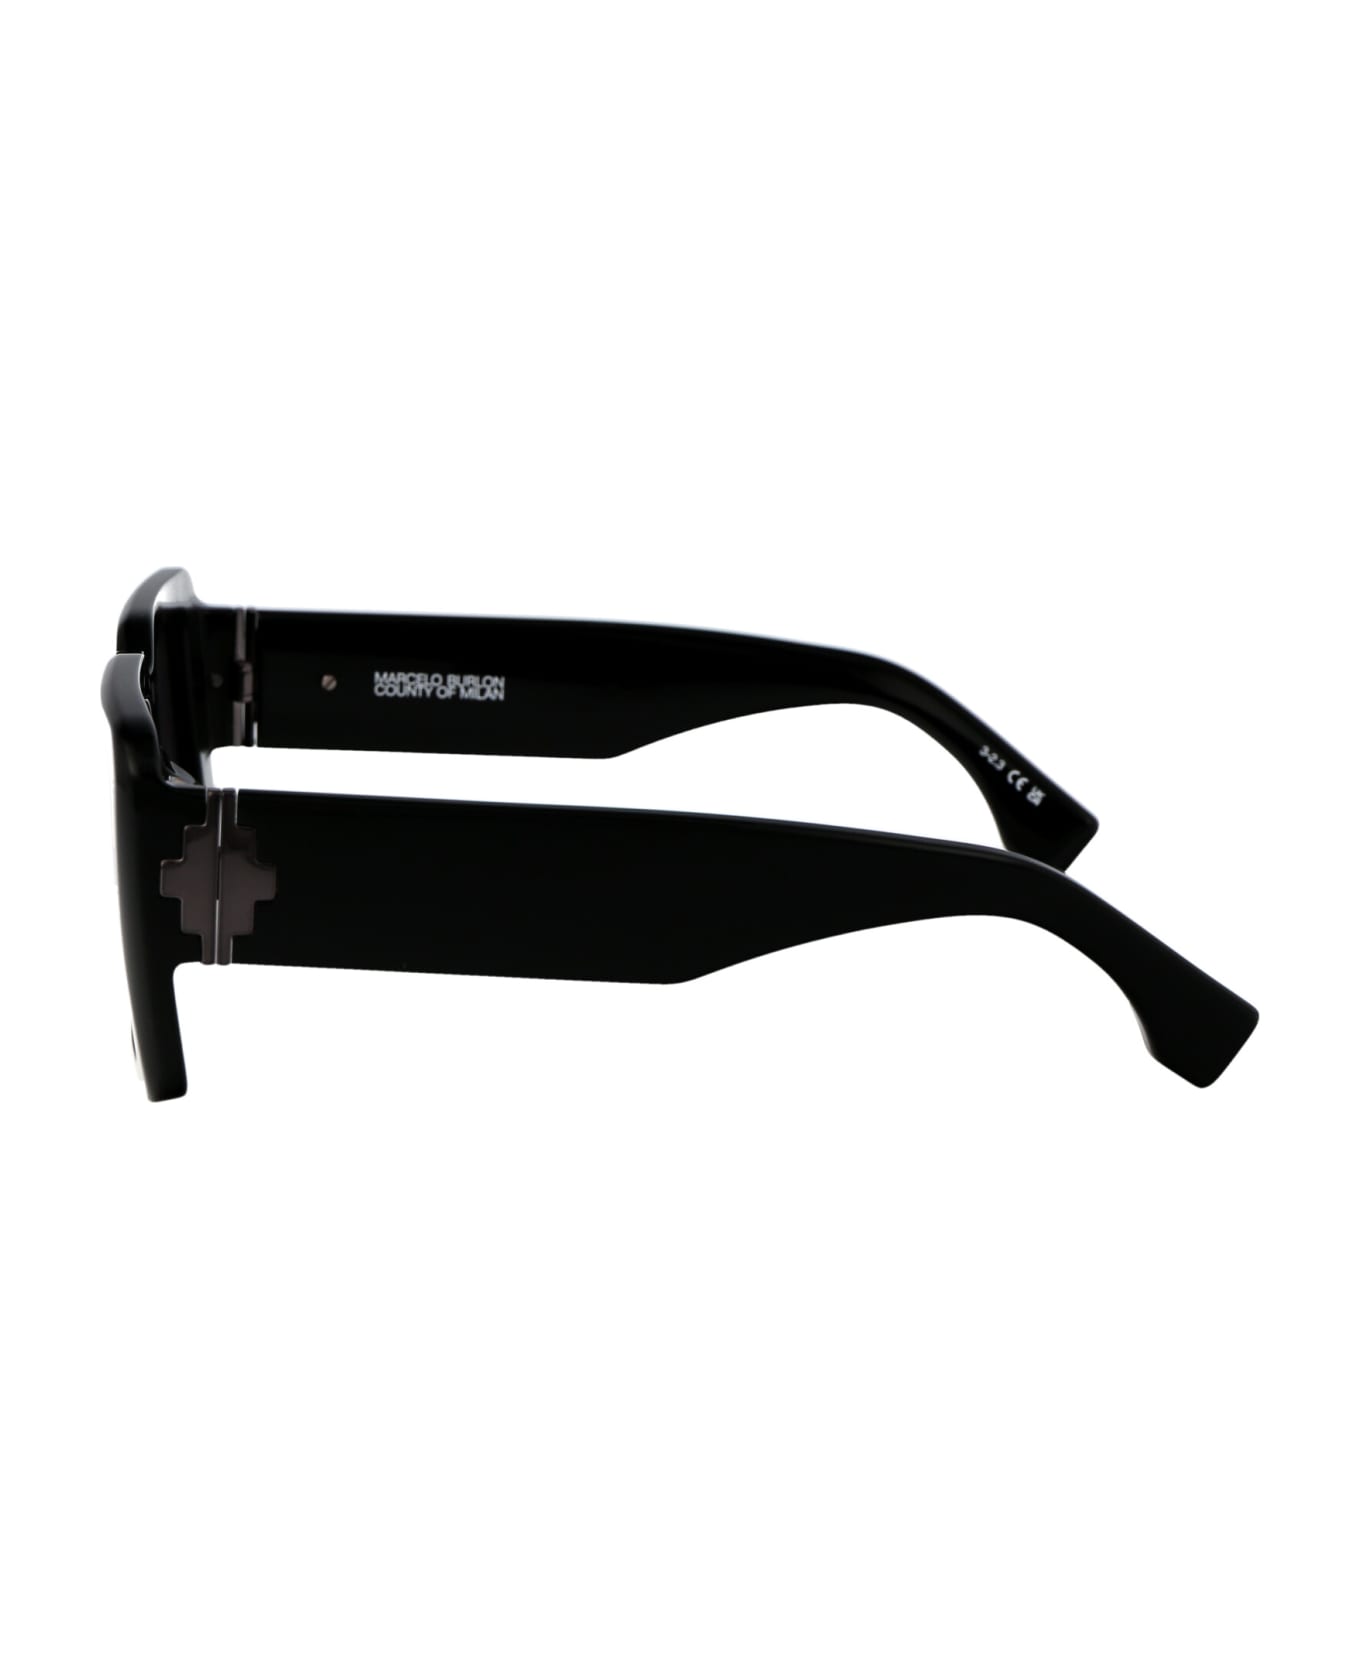 Marcelo Burlon Sicomoro Sunglasses - 1007 BLACK